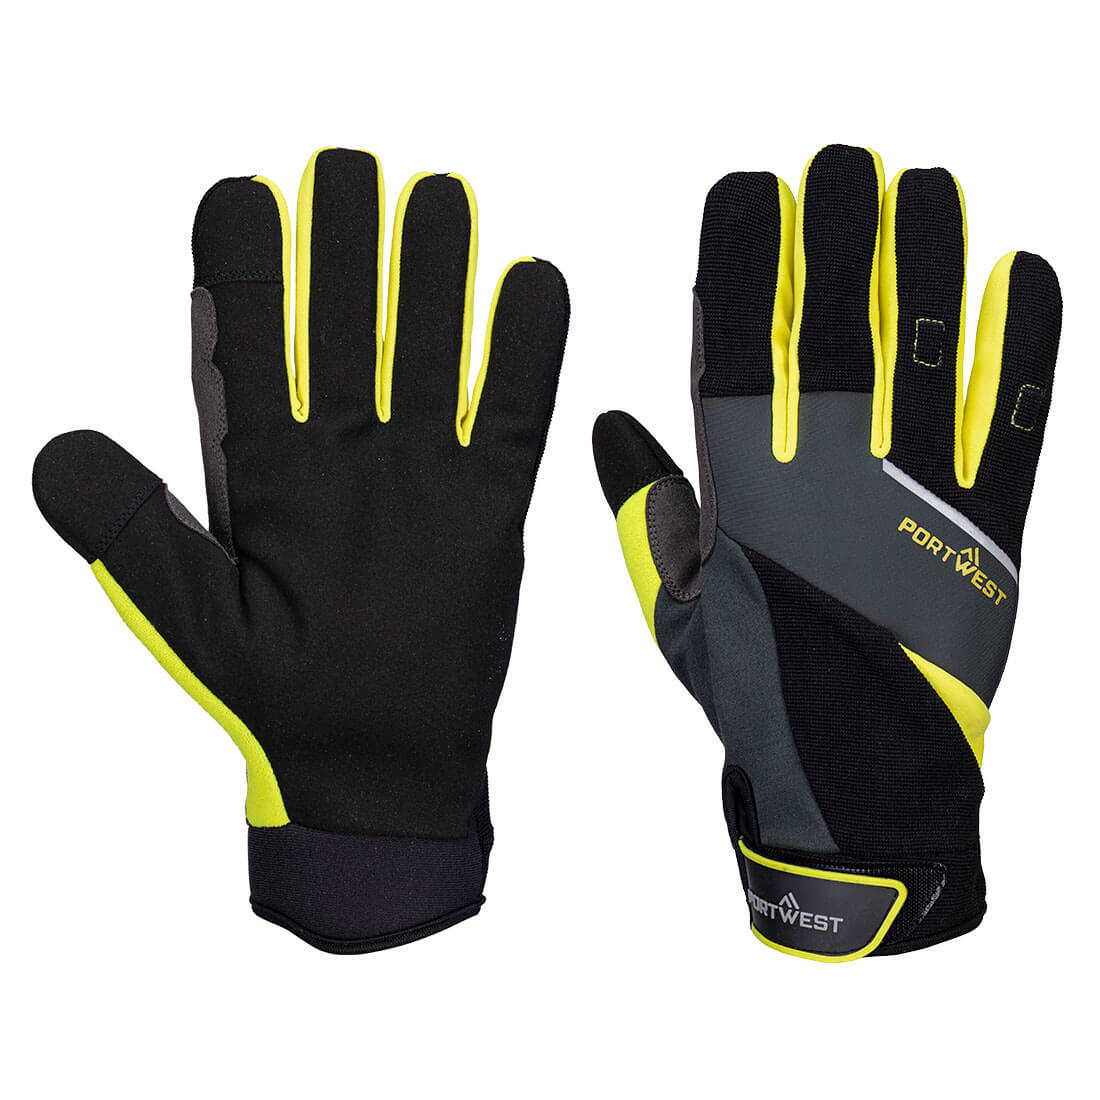 A774 - DX4 LR Cut Glove